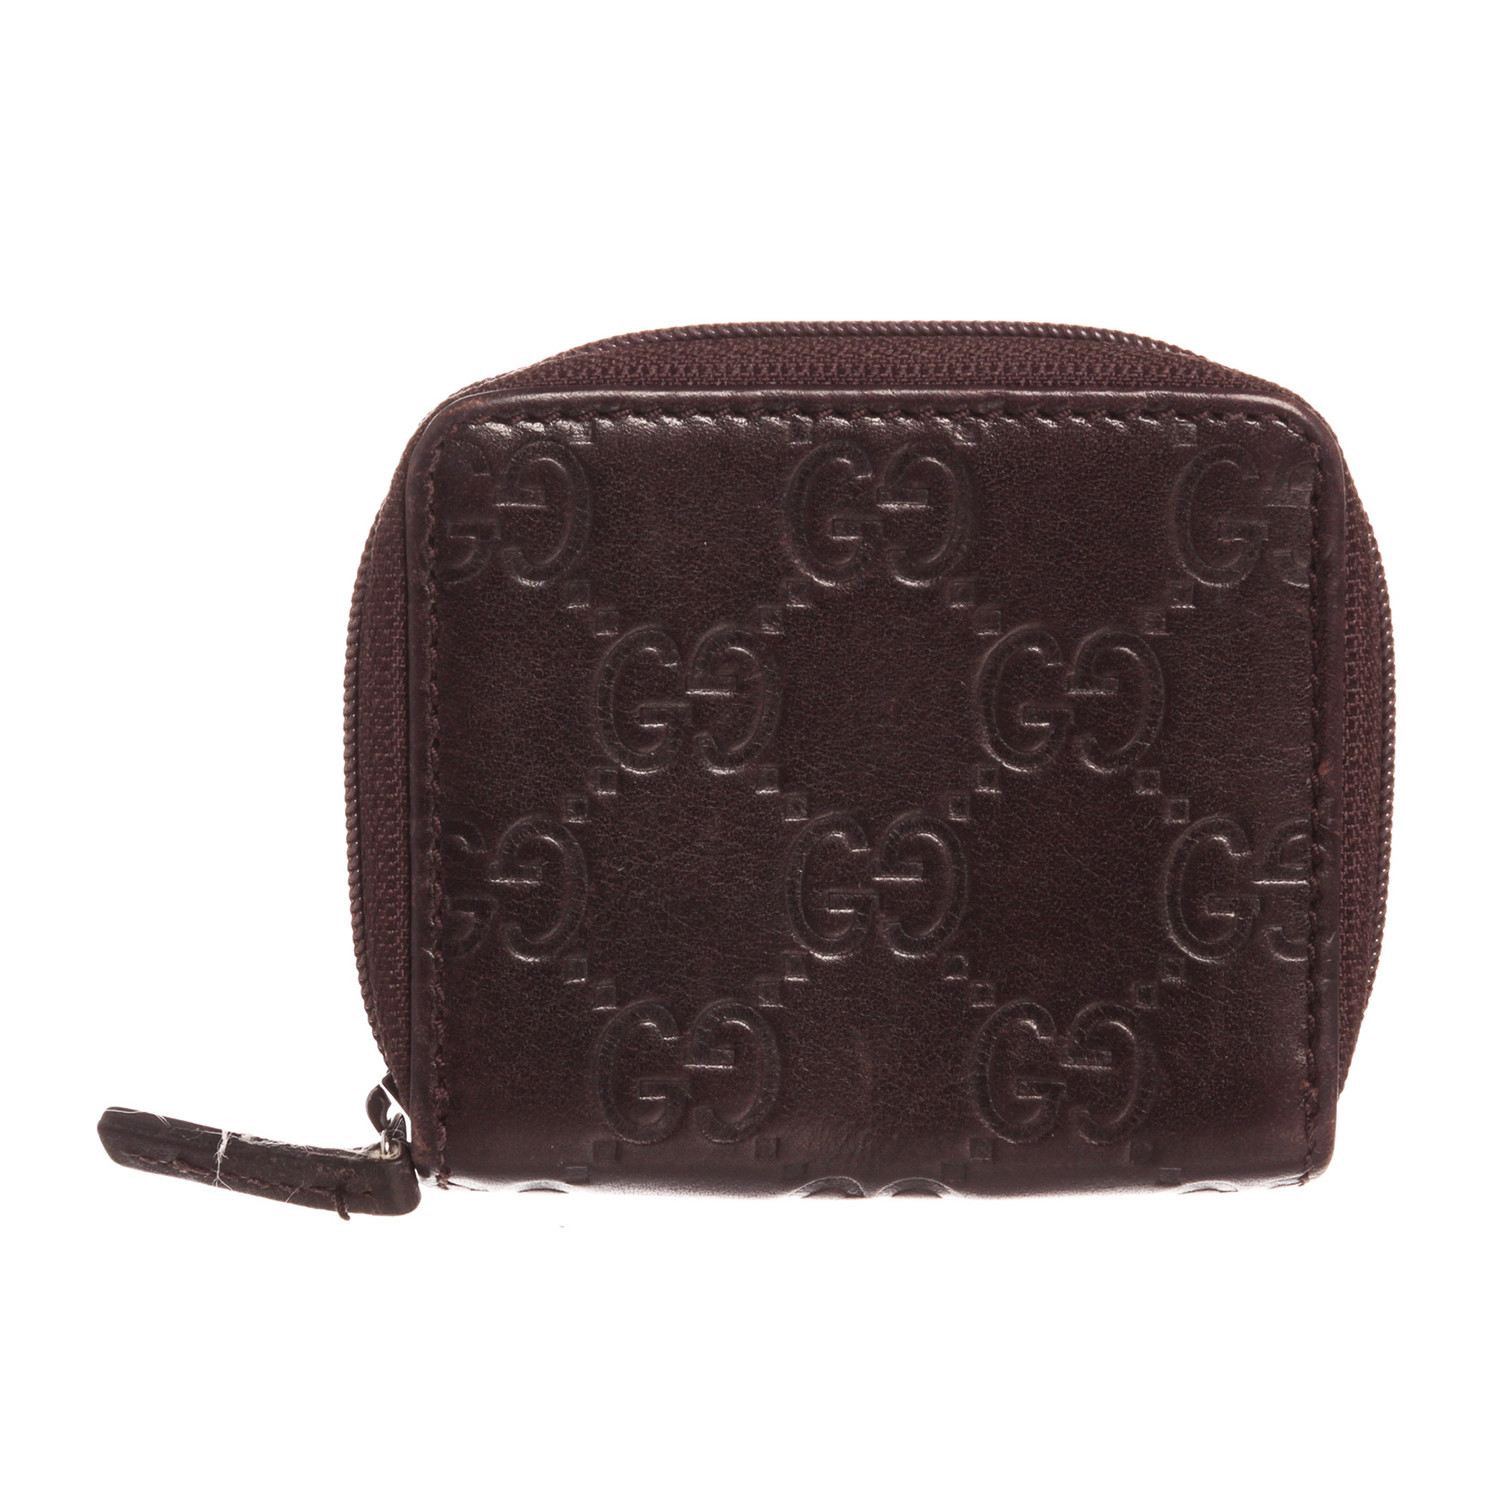 Gucci // Guccissima Leather Extra Small Zippy Coin Purse // Dark Brown ...